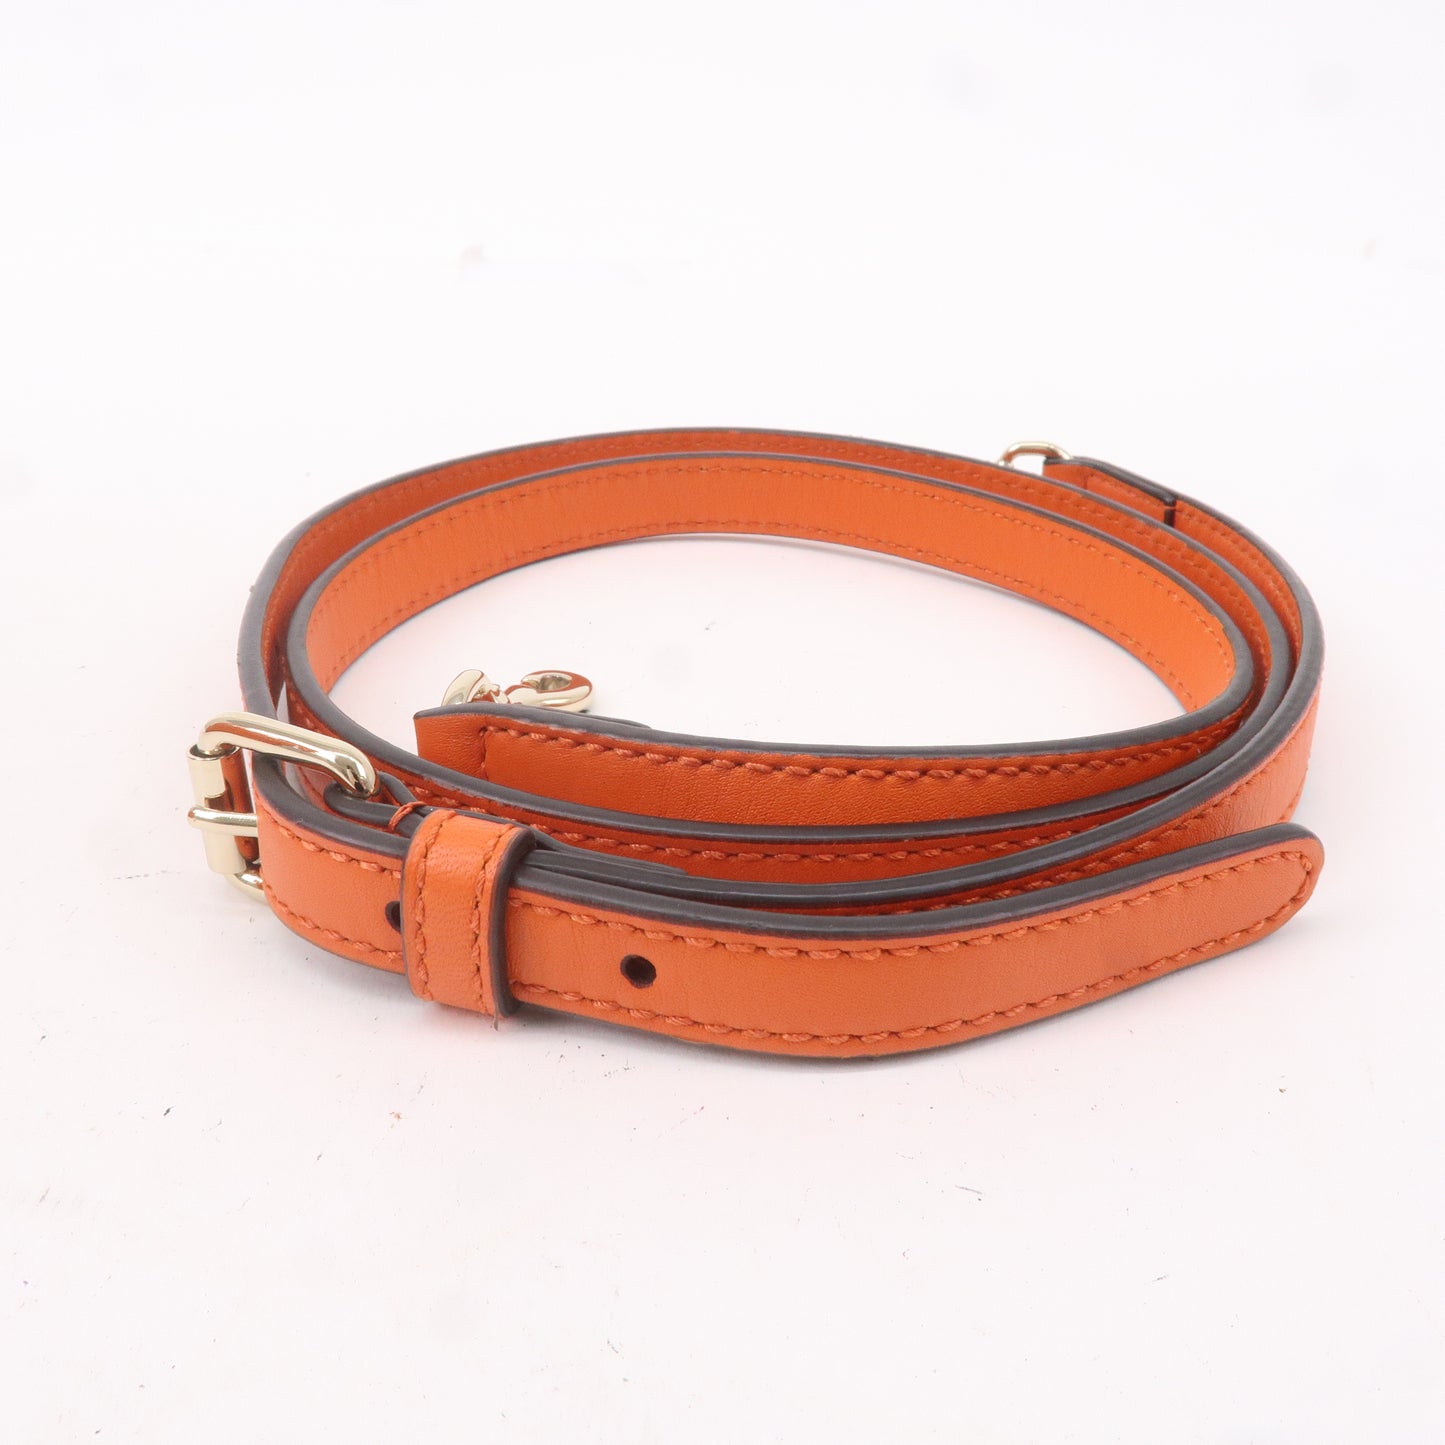 GUCCI Micro Guccissima Leather 2Way Shoulder Bag Orange 510289